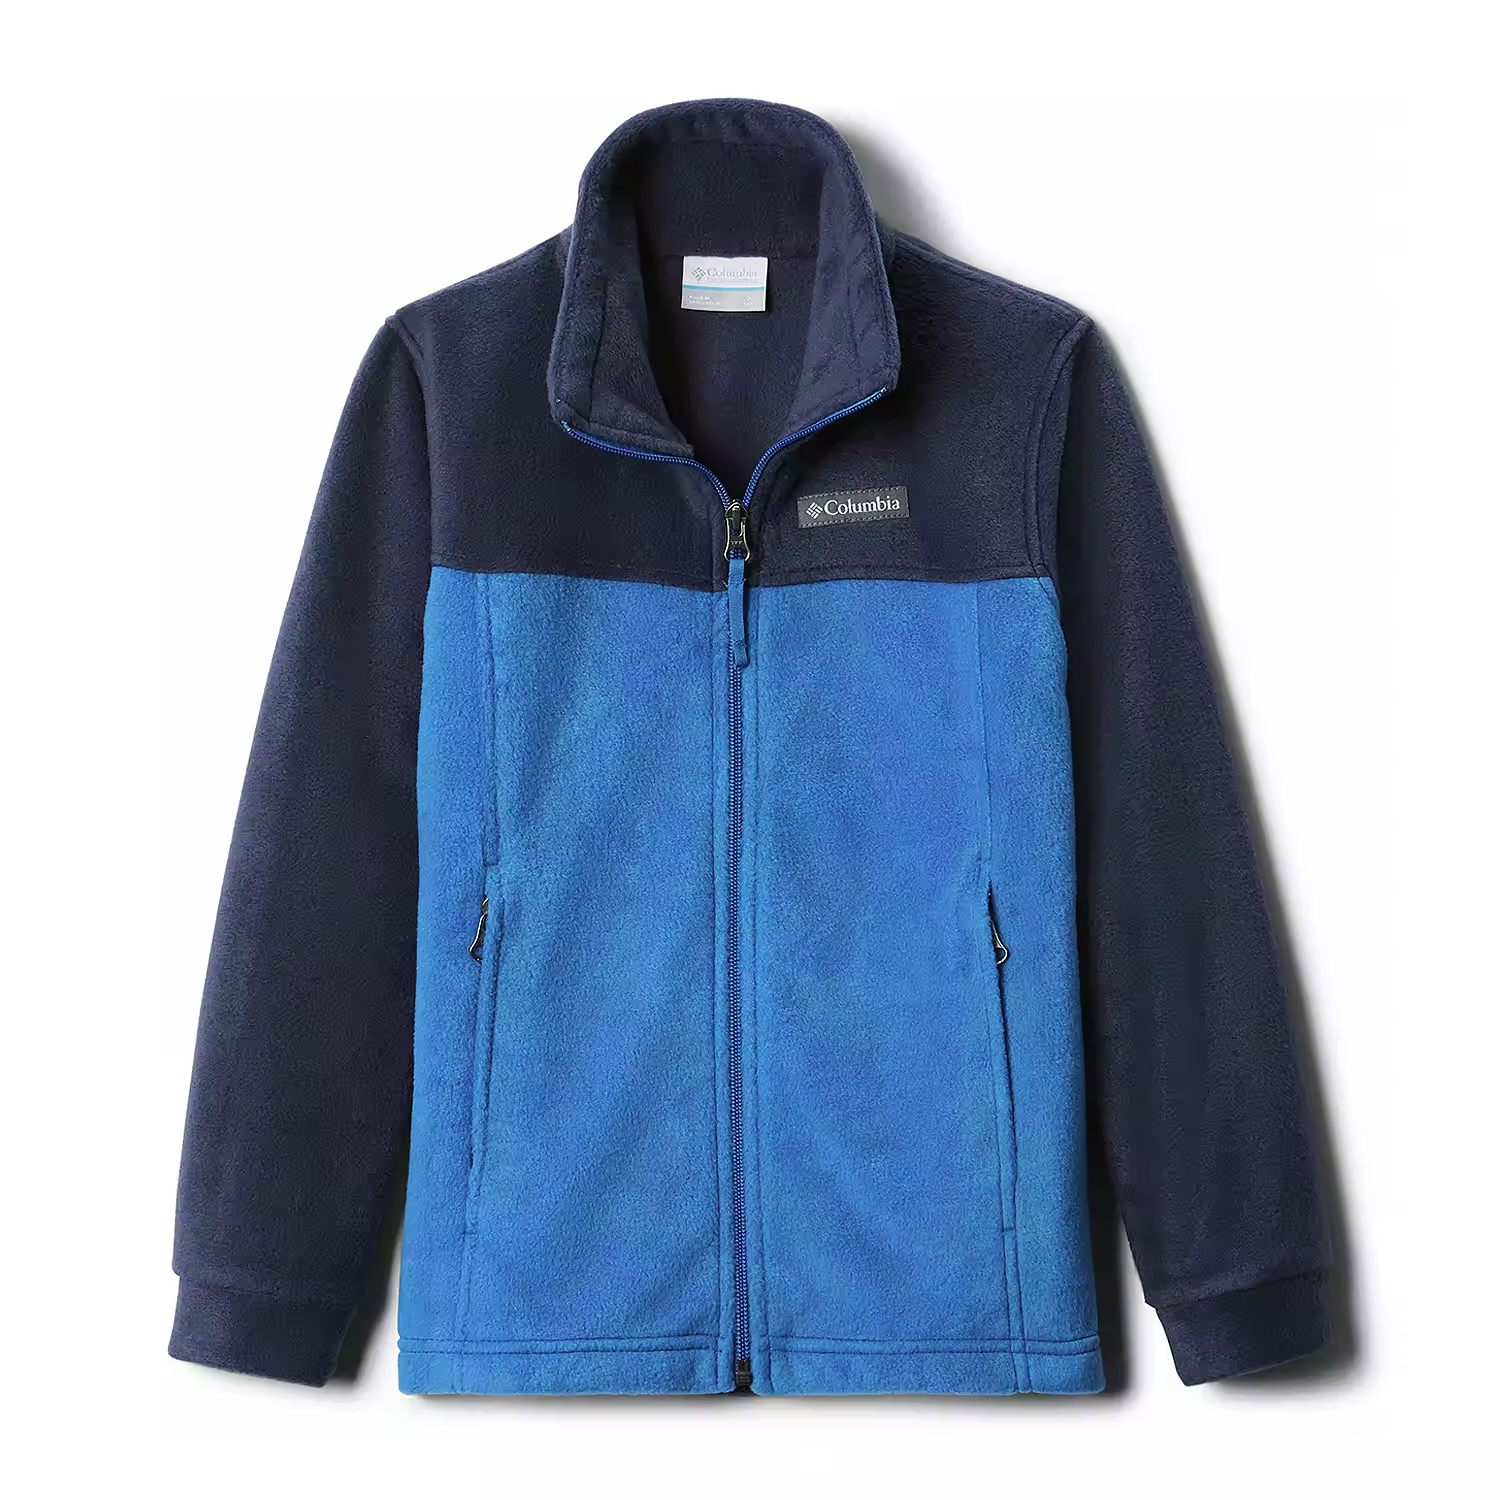 blue and grey fleece jacket